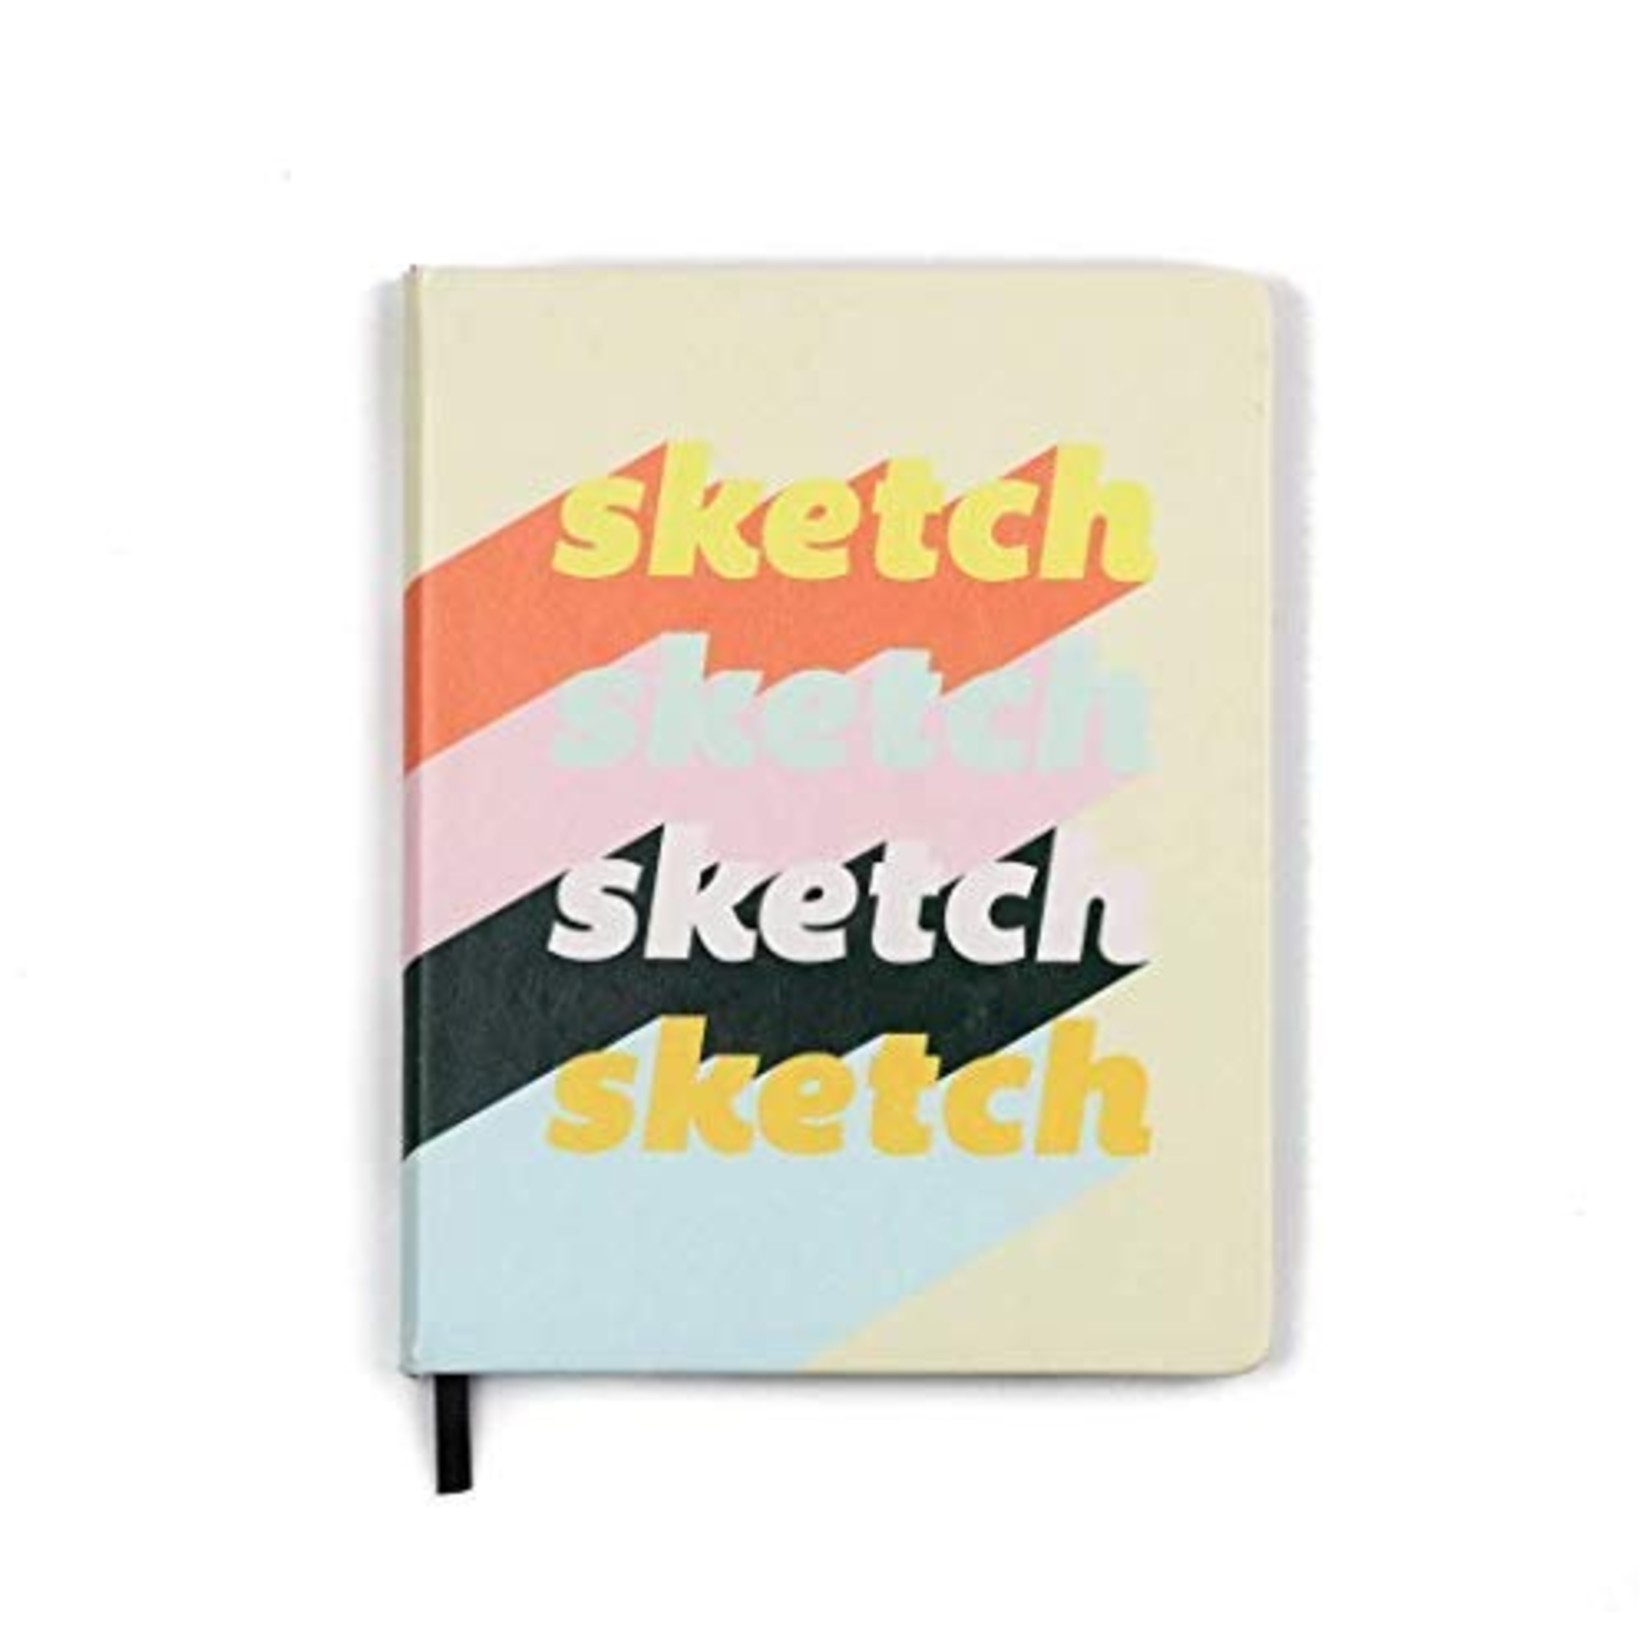 Sketch Sketch Sketch Hardcover Sketchbook